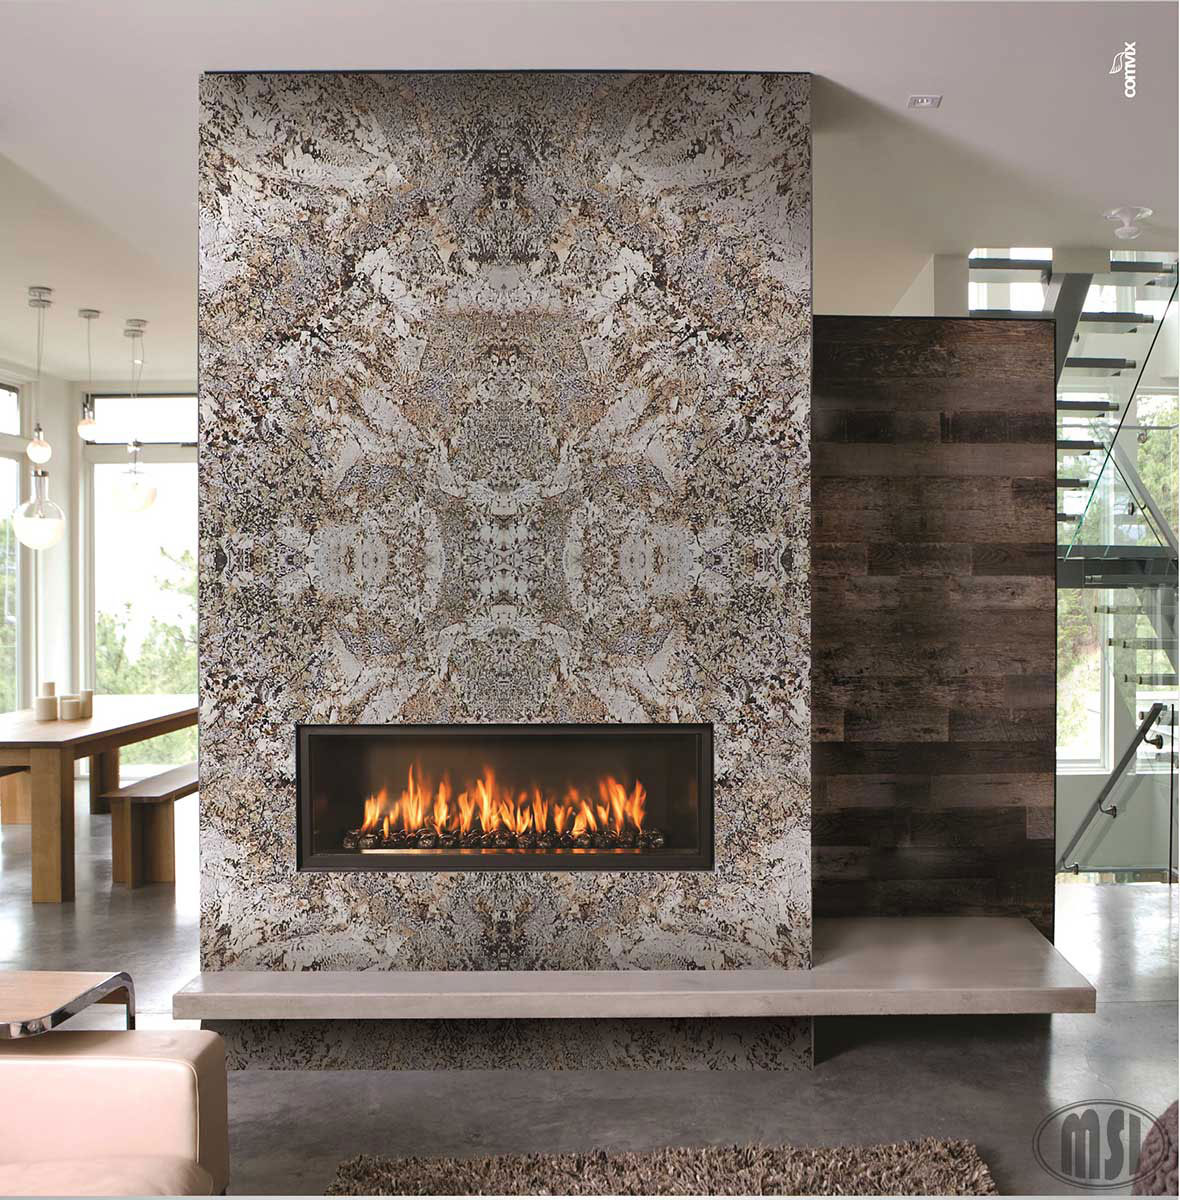  Caravelas Gold Granite Countertop in Fireplace